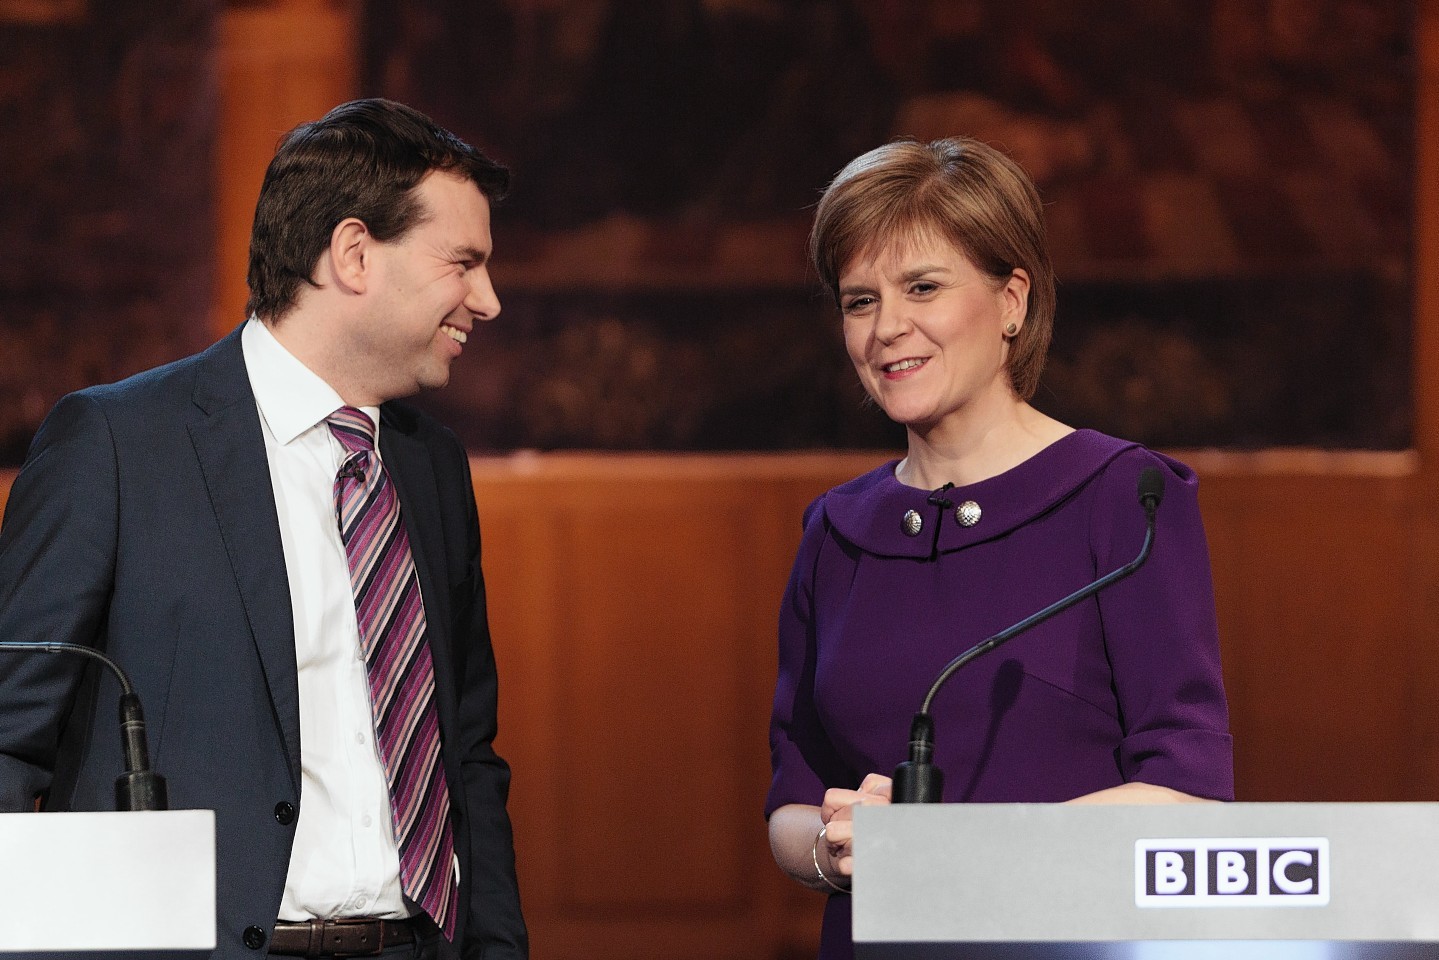 The Scottish Leaders Debate in Aberdeen